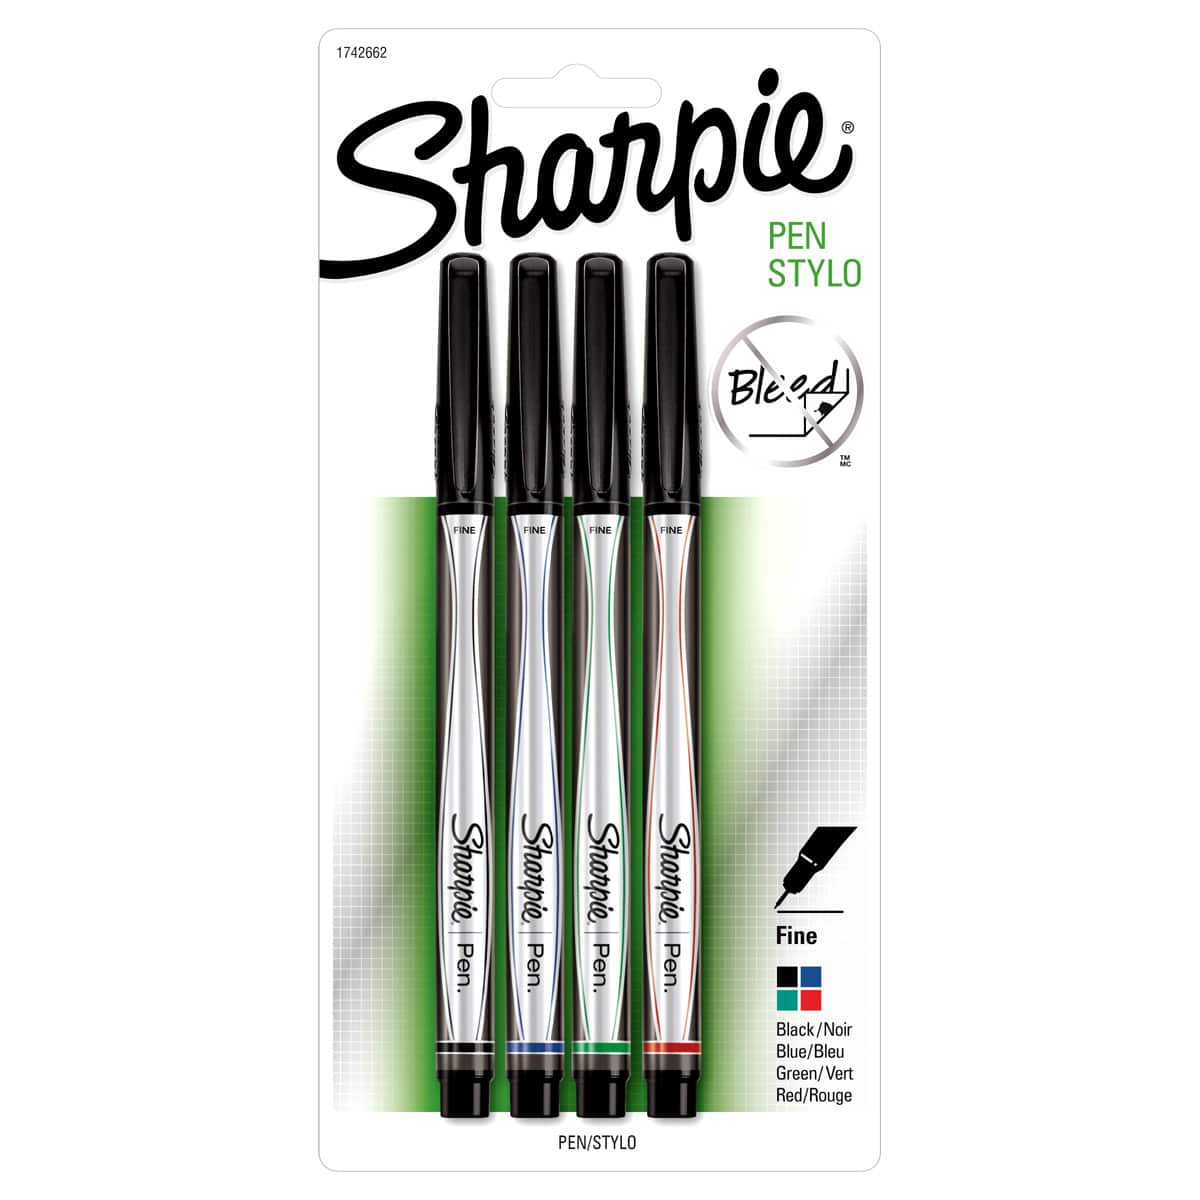 sharpie pens online